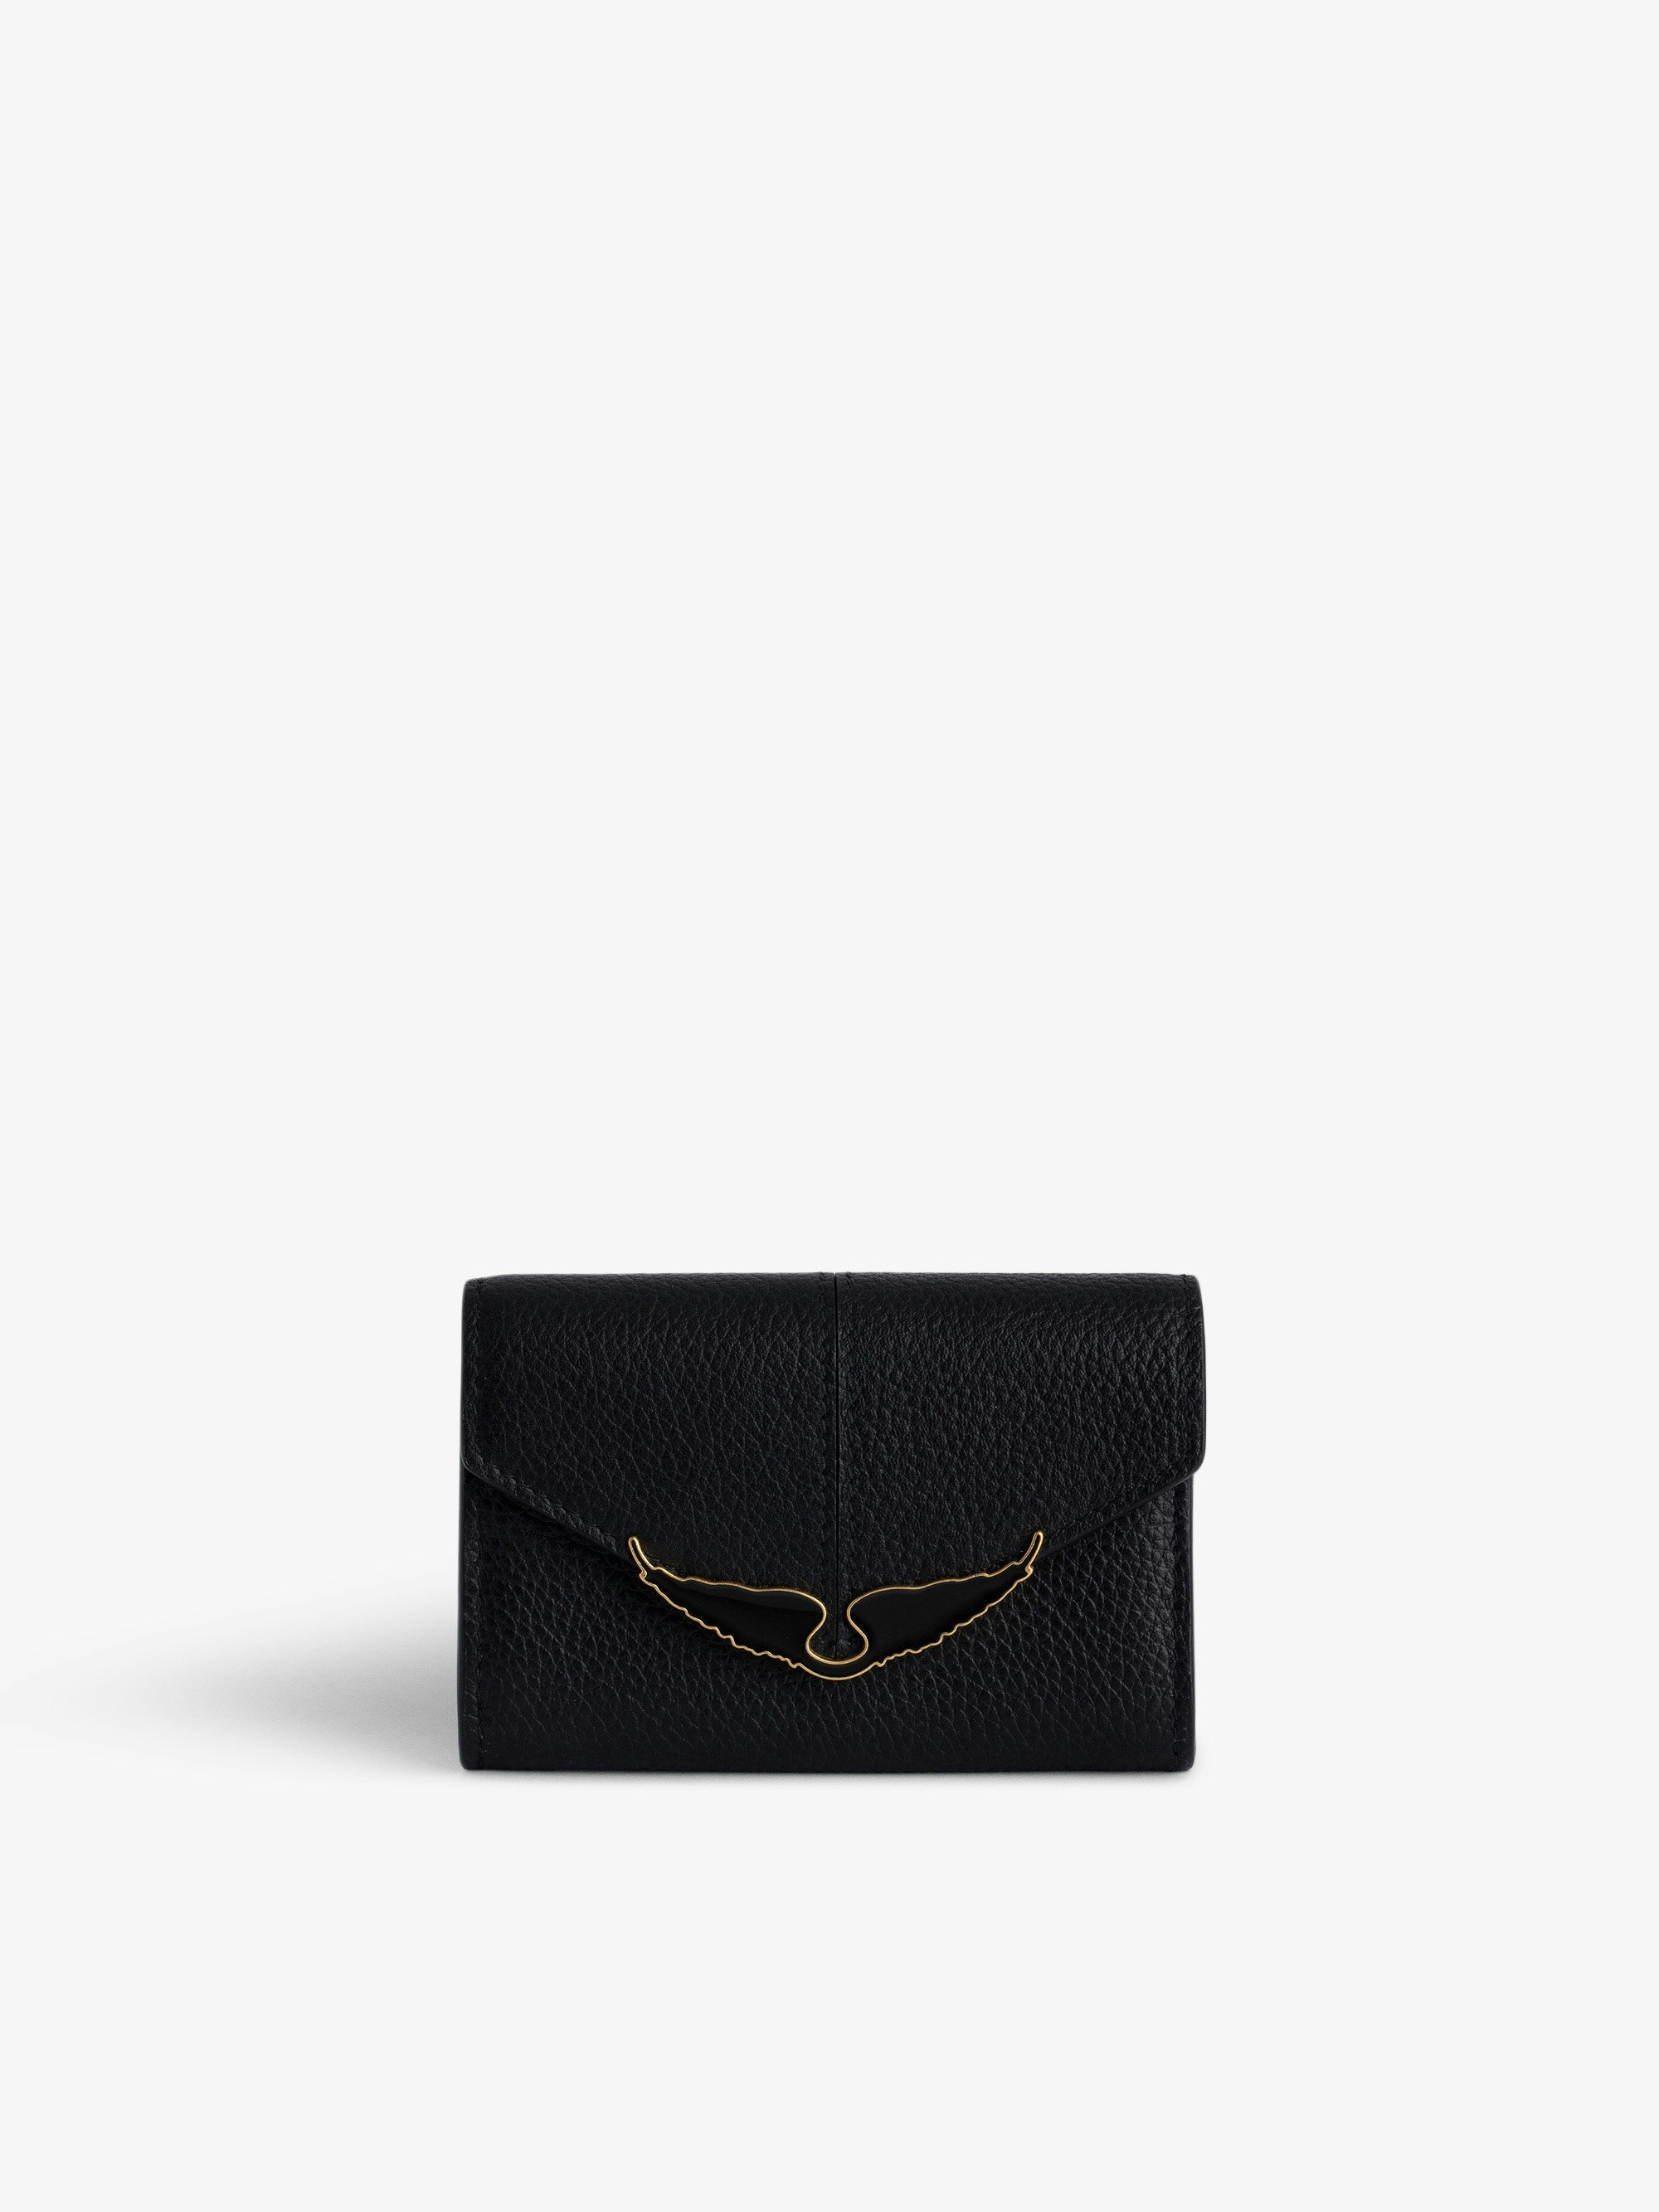 Brieftasche Borderline - Kleine, schwarze Brieftasche aus gnarbtem Leder mit Klappe und lackierten Flügeln.